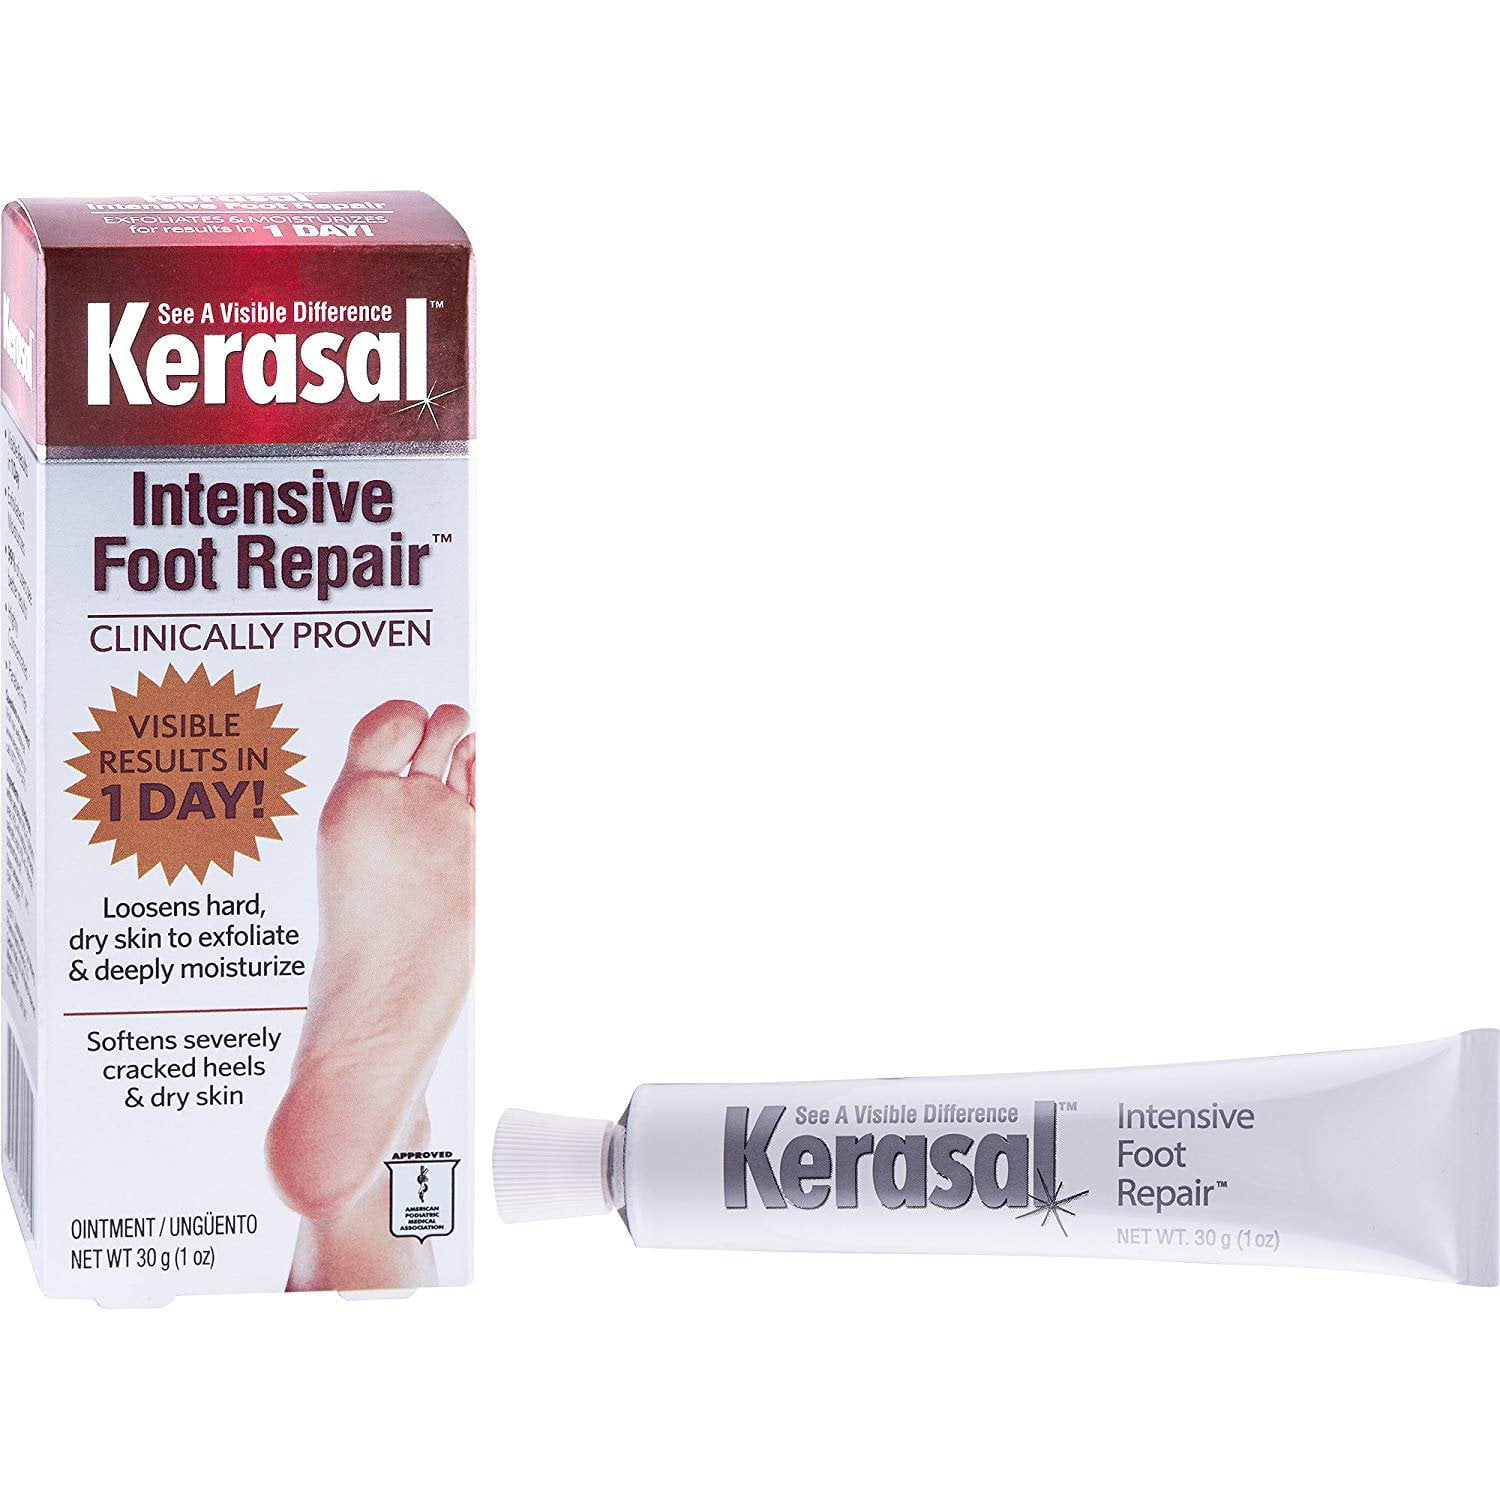 Kerasal Intensive Foot Repair, Exfoliating Foot Moisturizer 1 oz